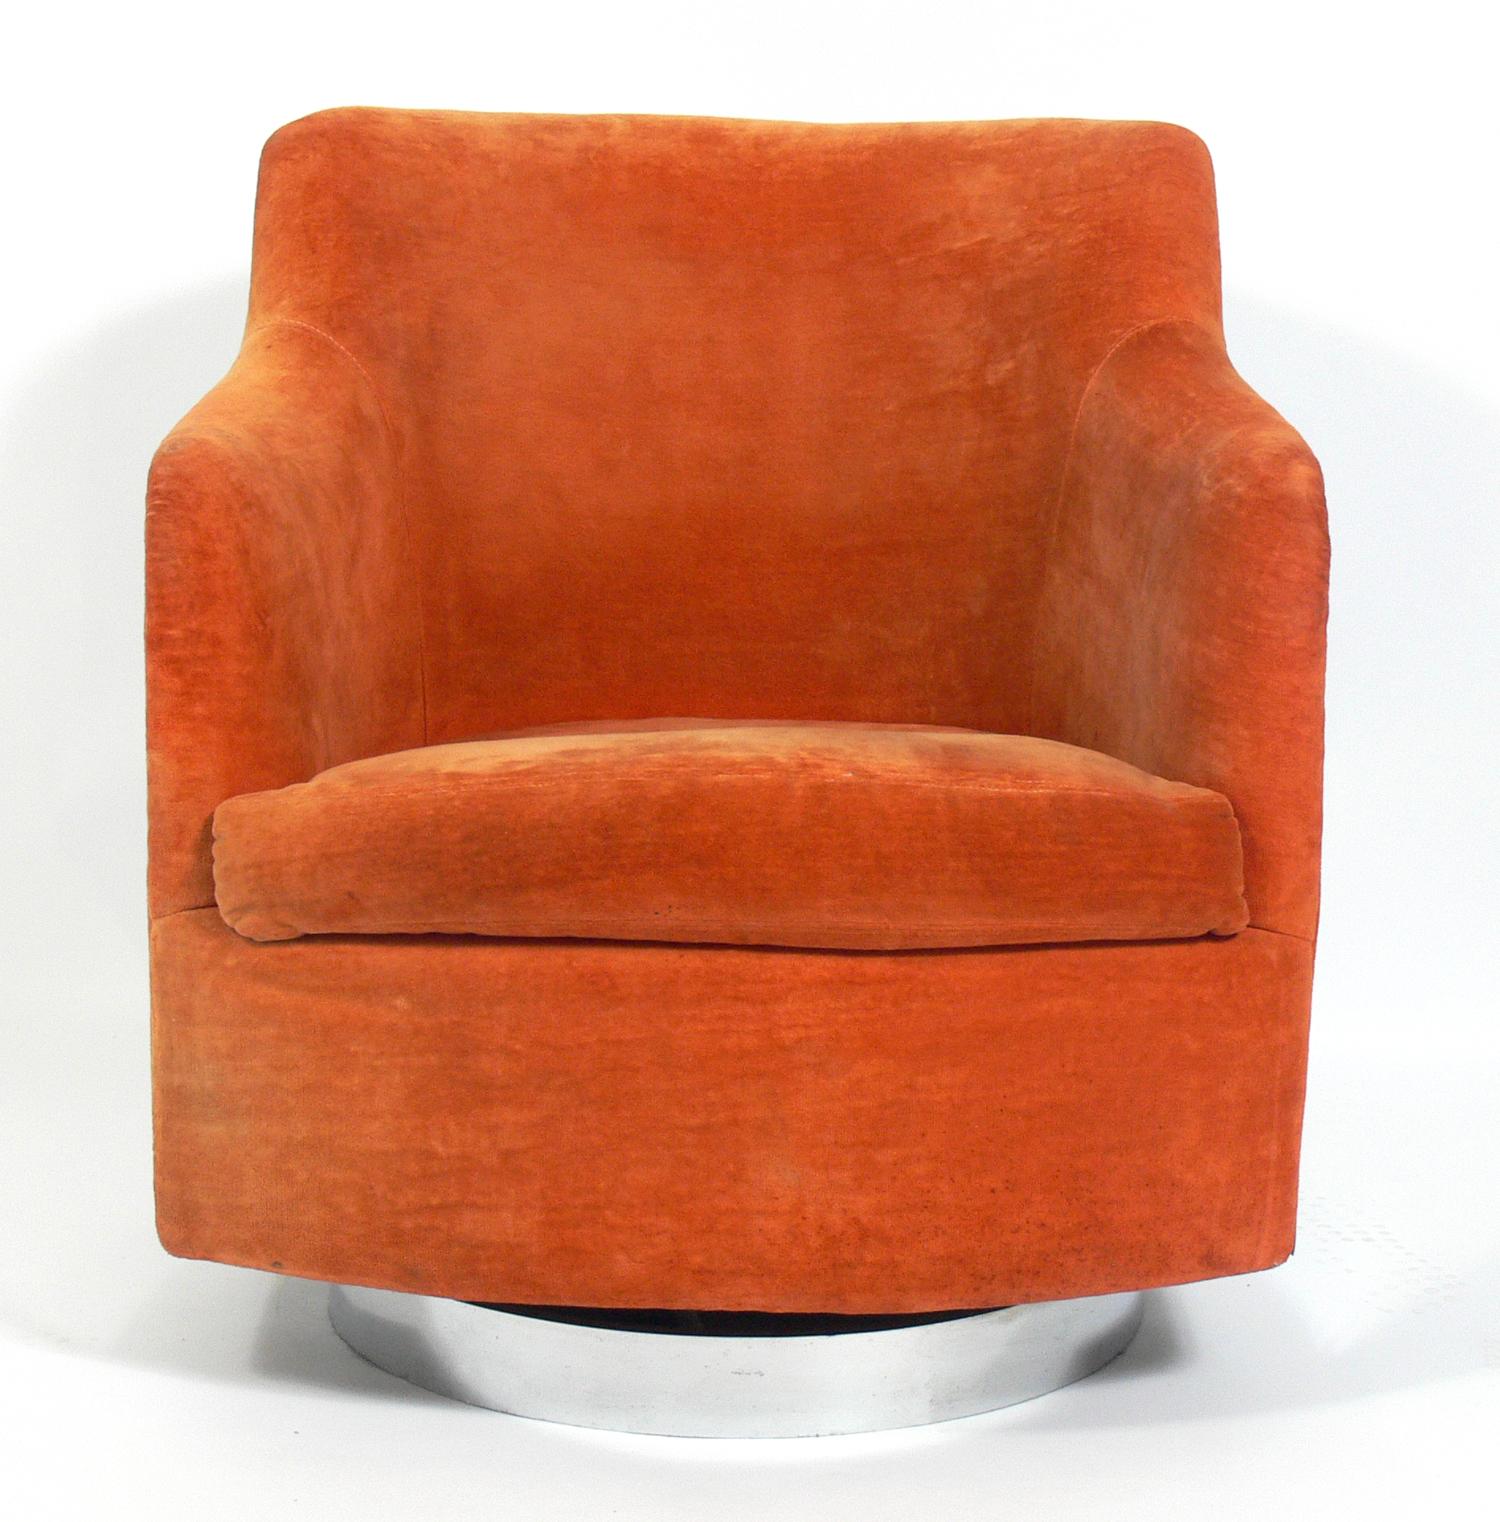 Geschwungener Chrom-Drehstuhl, entworfen von Milo Baughman, Amerikaner, um 1960. Das Chrom wurde von Hand poliert. Der ursprüngliche orangefarbene Samtstoff bleibt erhalten. Wenn Sie es wünschen, können wir es gegen einen Aufpreis von 400 $ mit